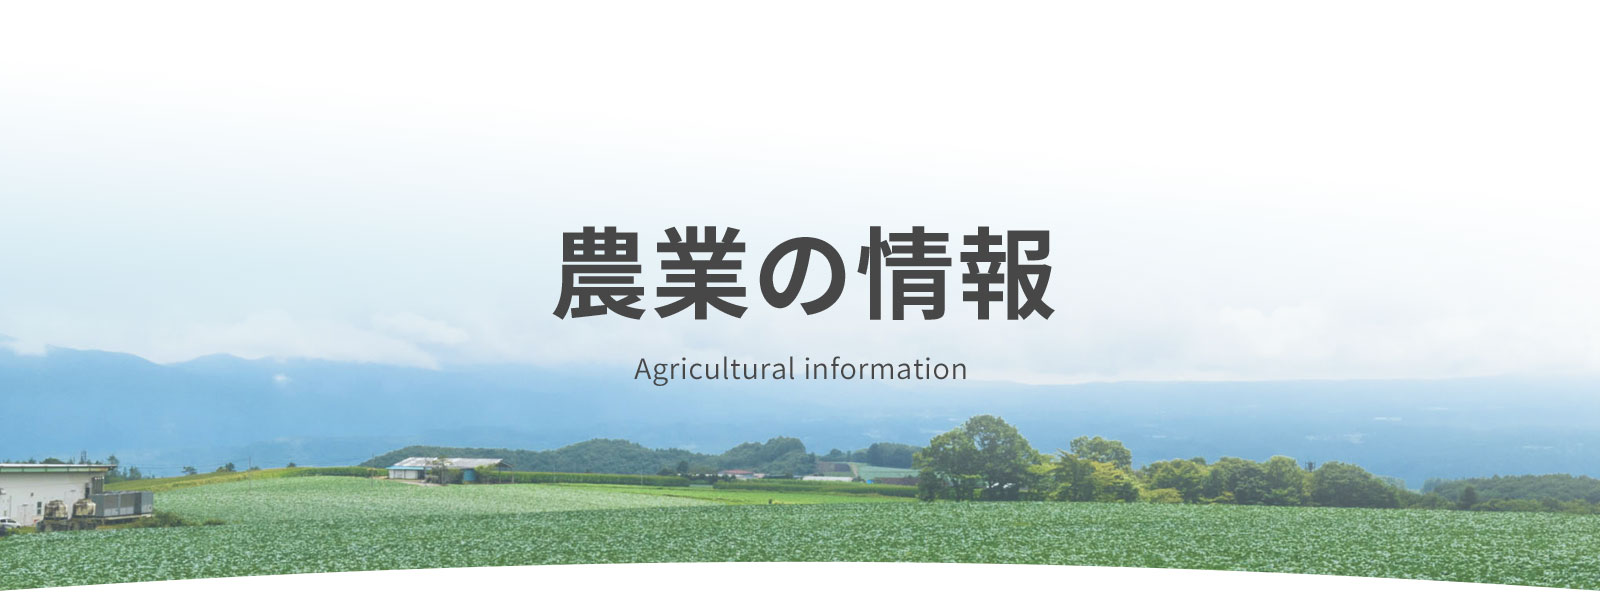 農業の情報